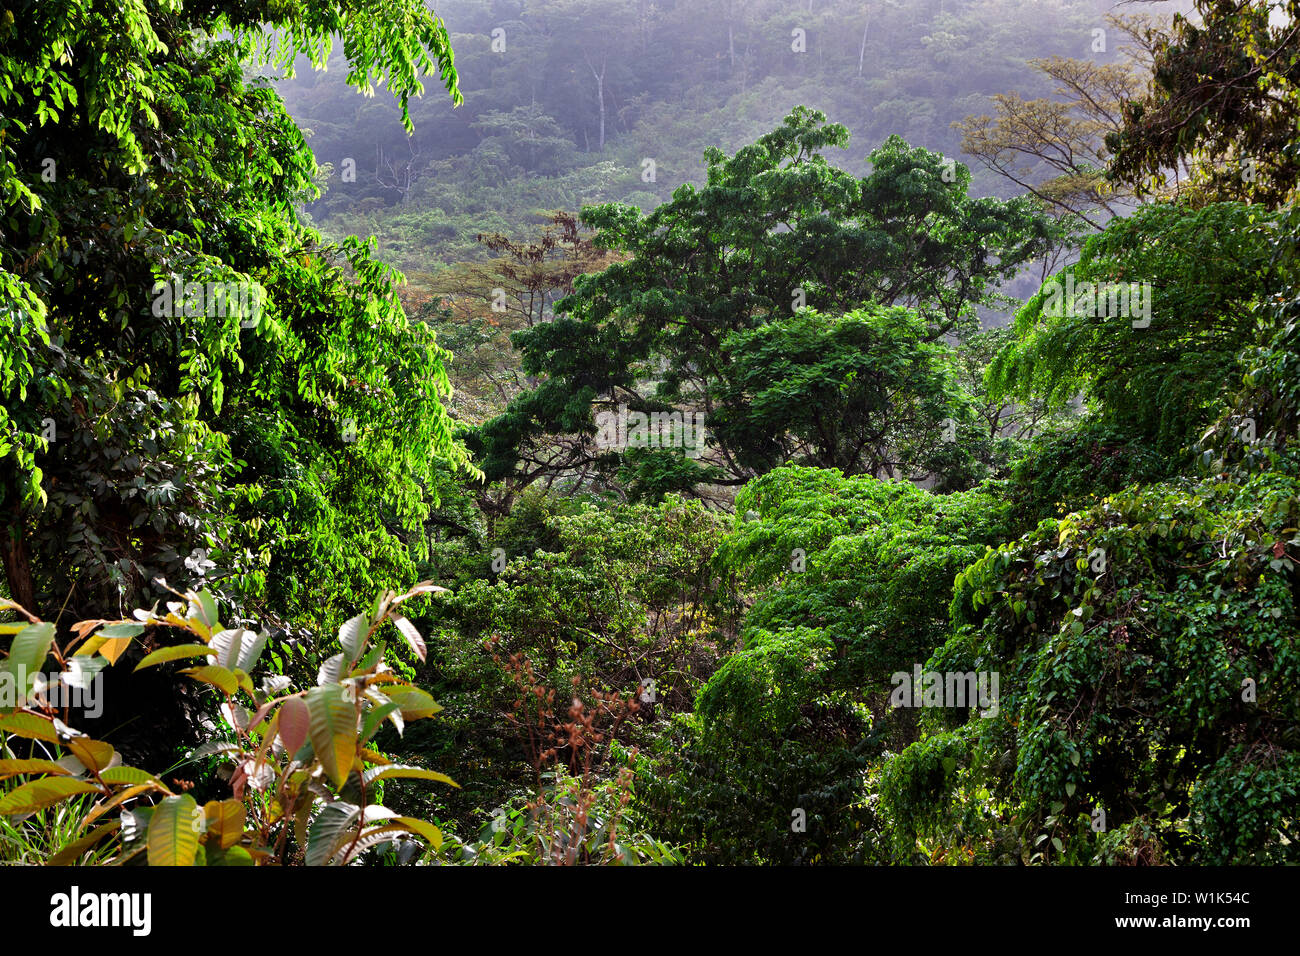 La végétation luxuriante de la forêt tropicale du paysage avec des plantes et des arbres en fleurs dans la jungle africaine de la réserve de conservation des forêts, de la Sierra Leone Banque D'Images